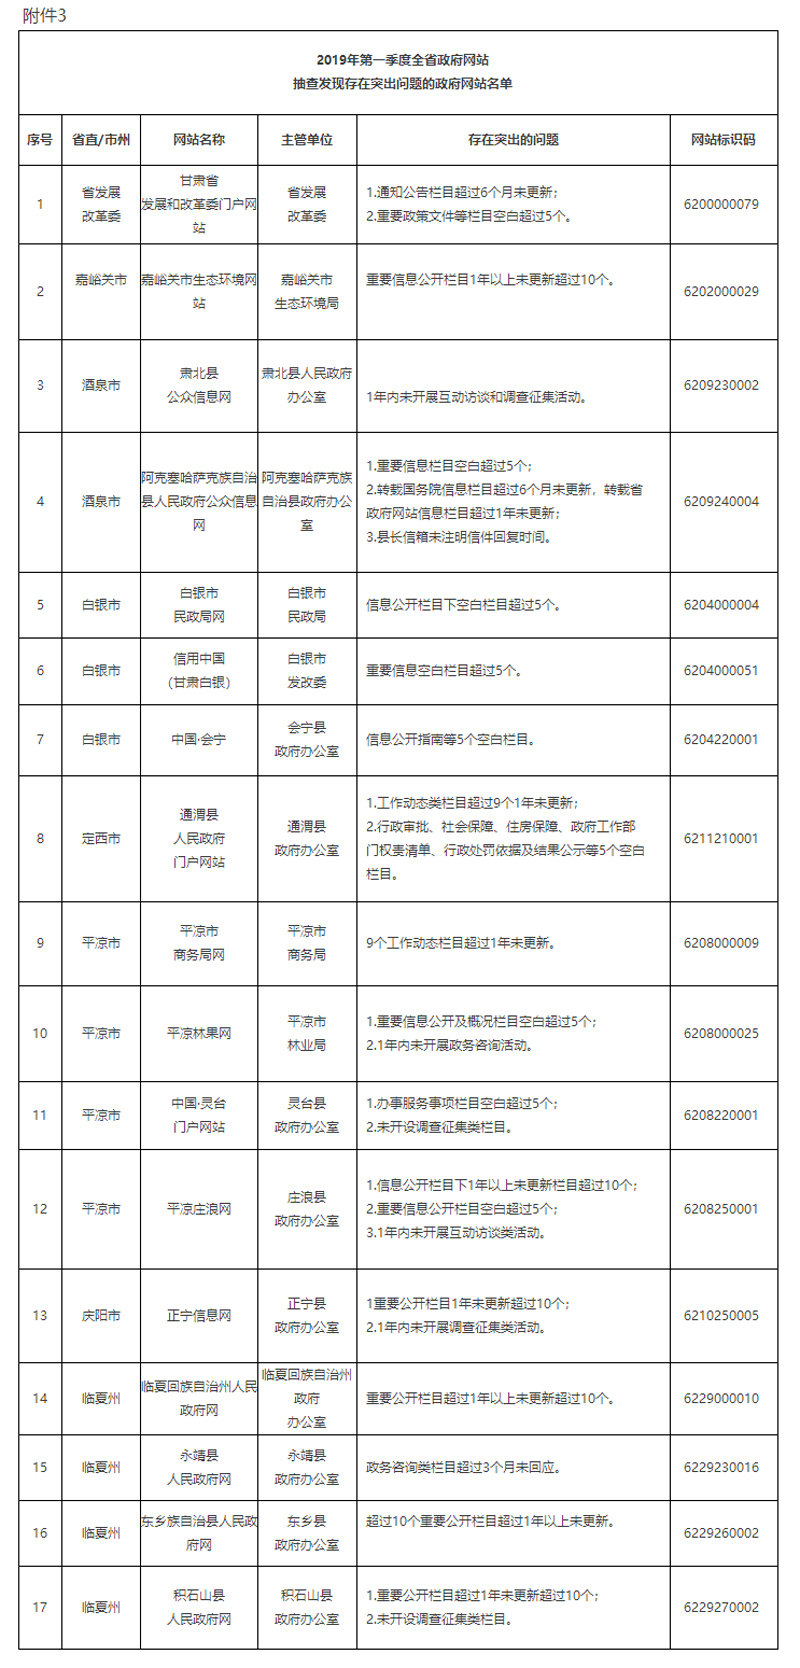 甘肃省人民政府办公厅关于2018年度全省政府网站建设管理工作考核情况和2019年第一季度抽查情况的通报(图1)